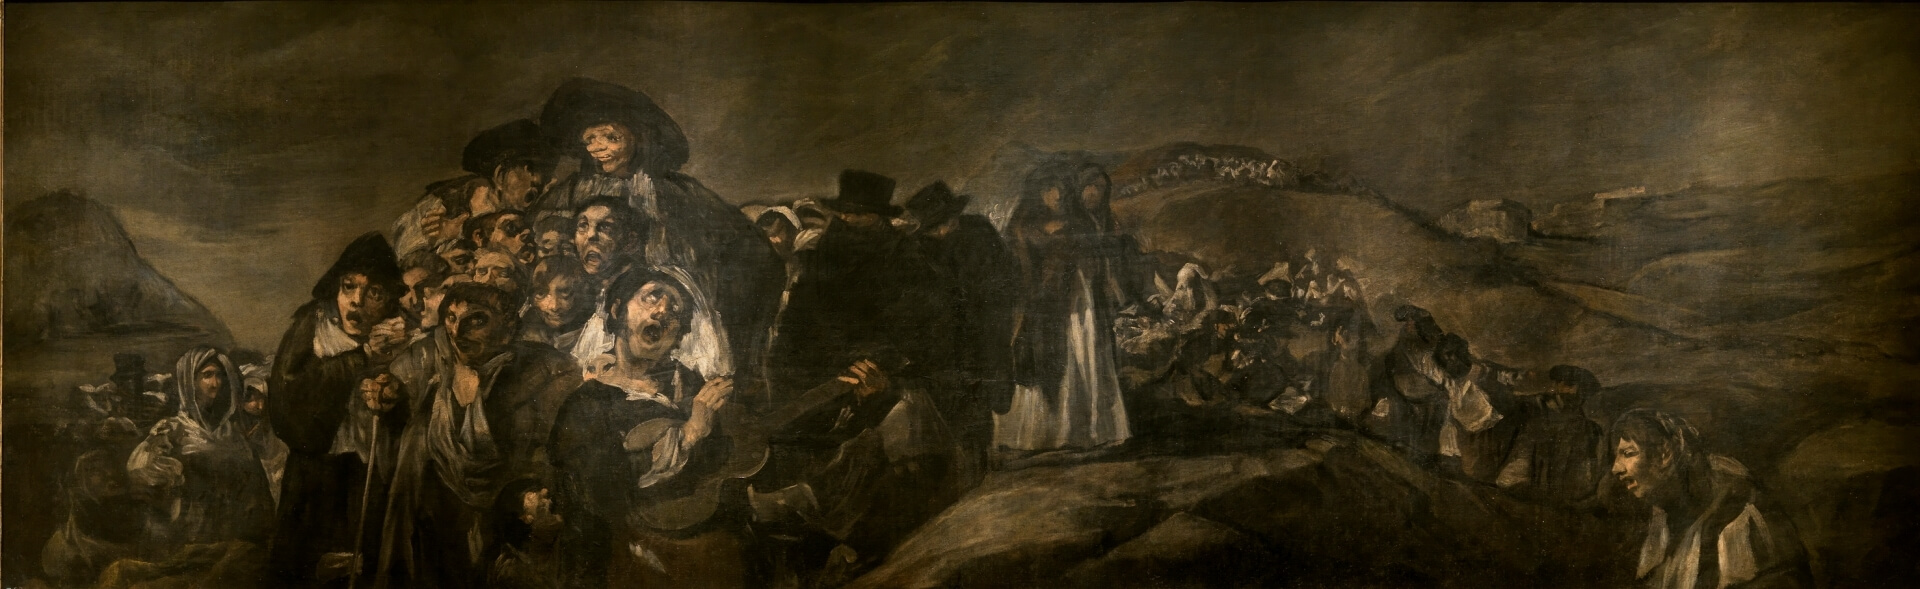 'La romería de San Isidro' de Goya